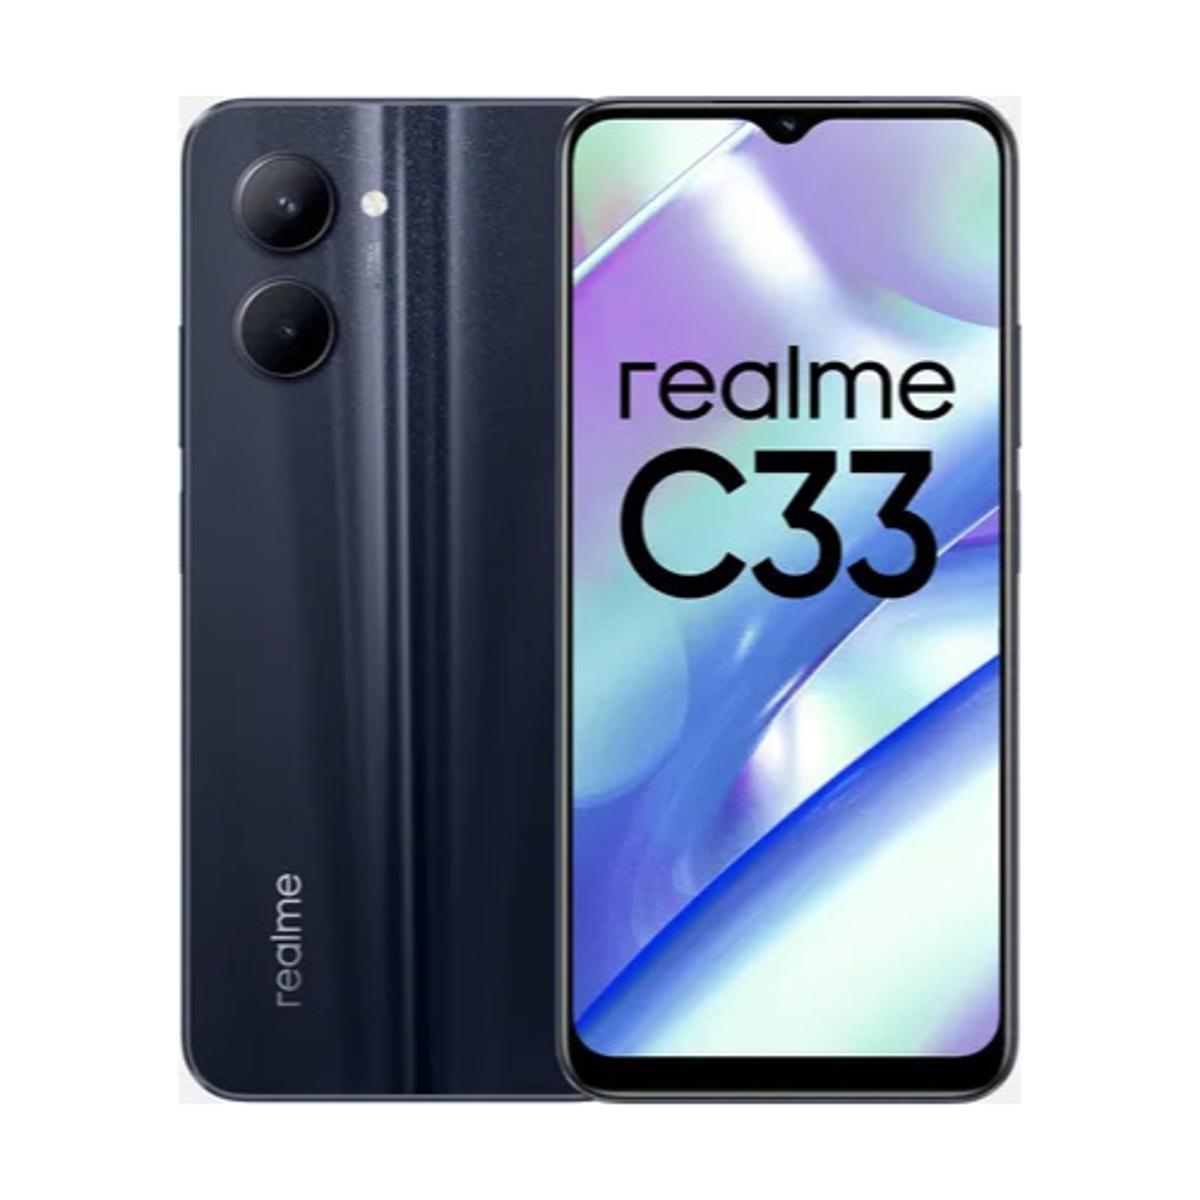 Realme C33 Price in Pakista